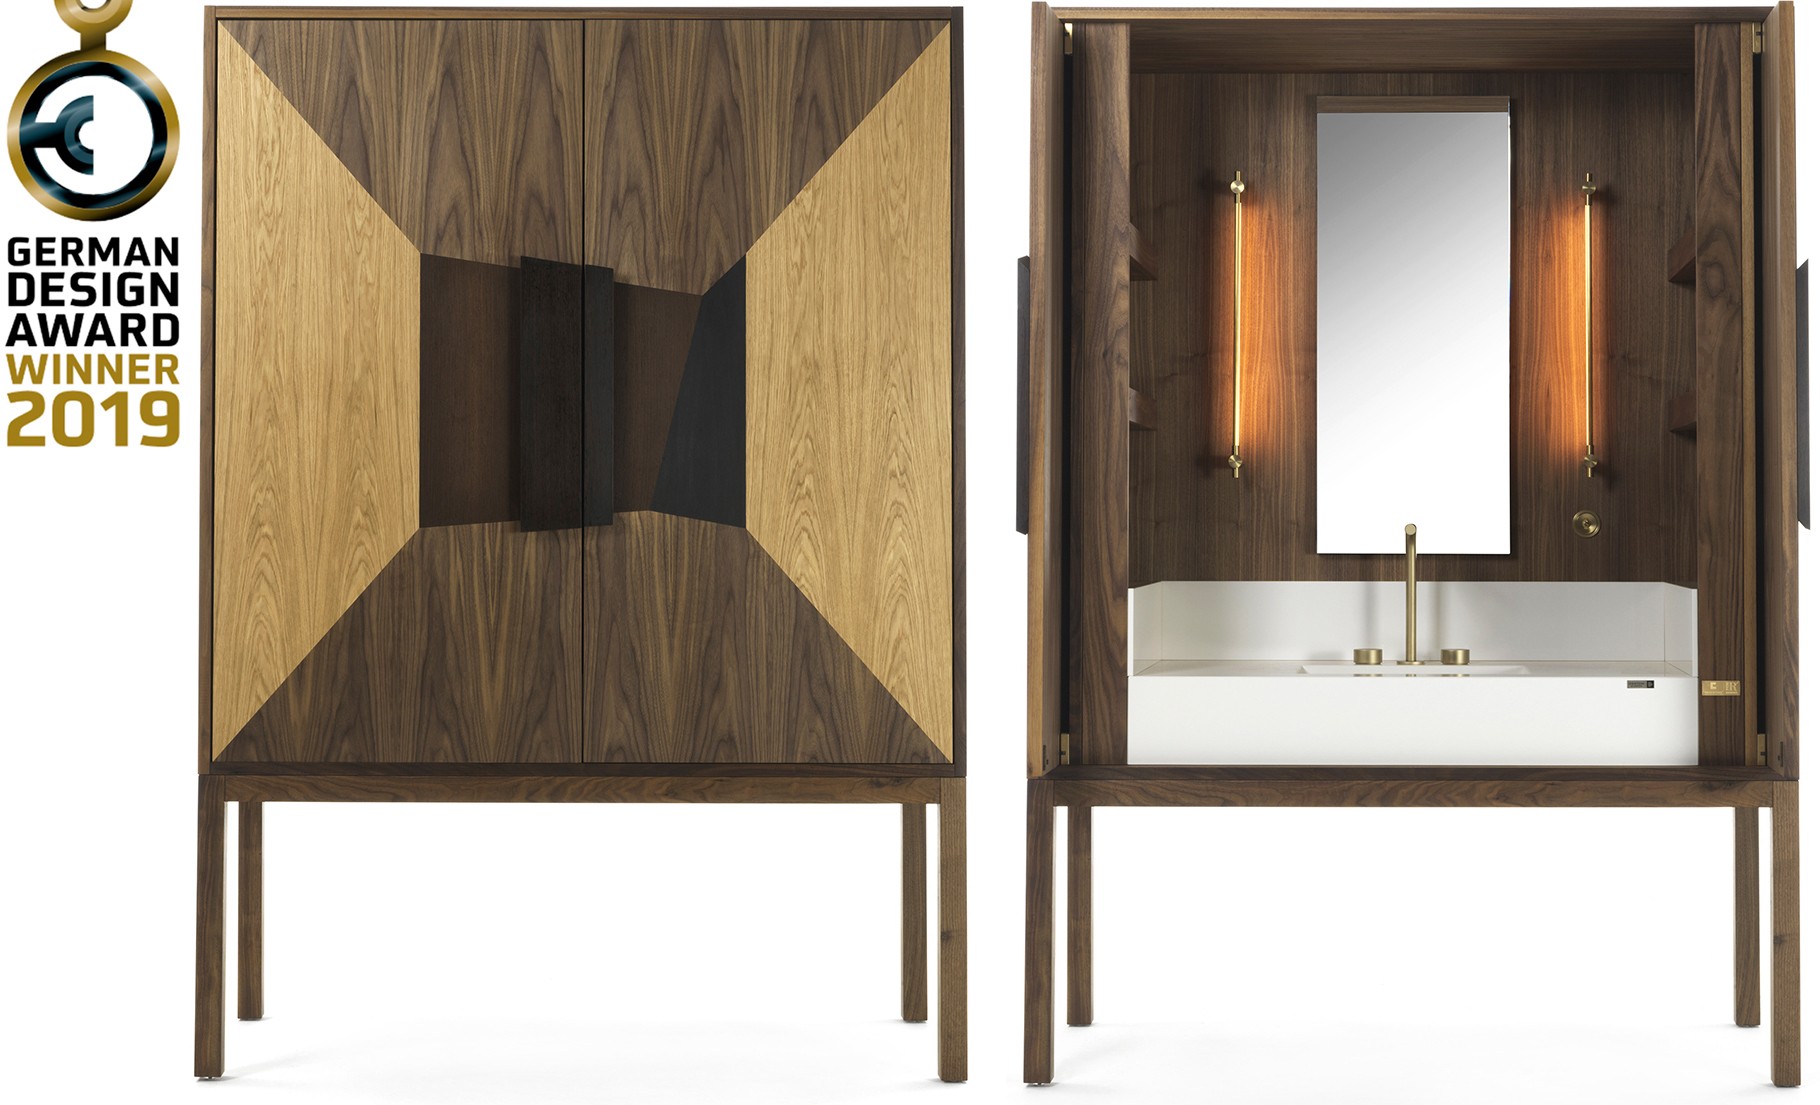 German Design Award Winner Dekauri Bespoke Bathroom Vanity